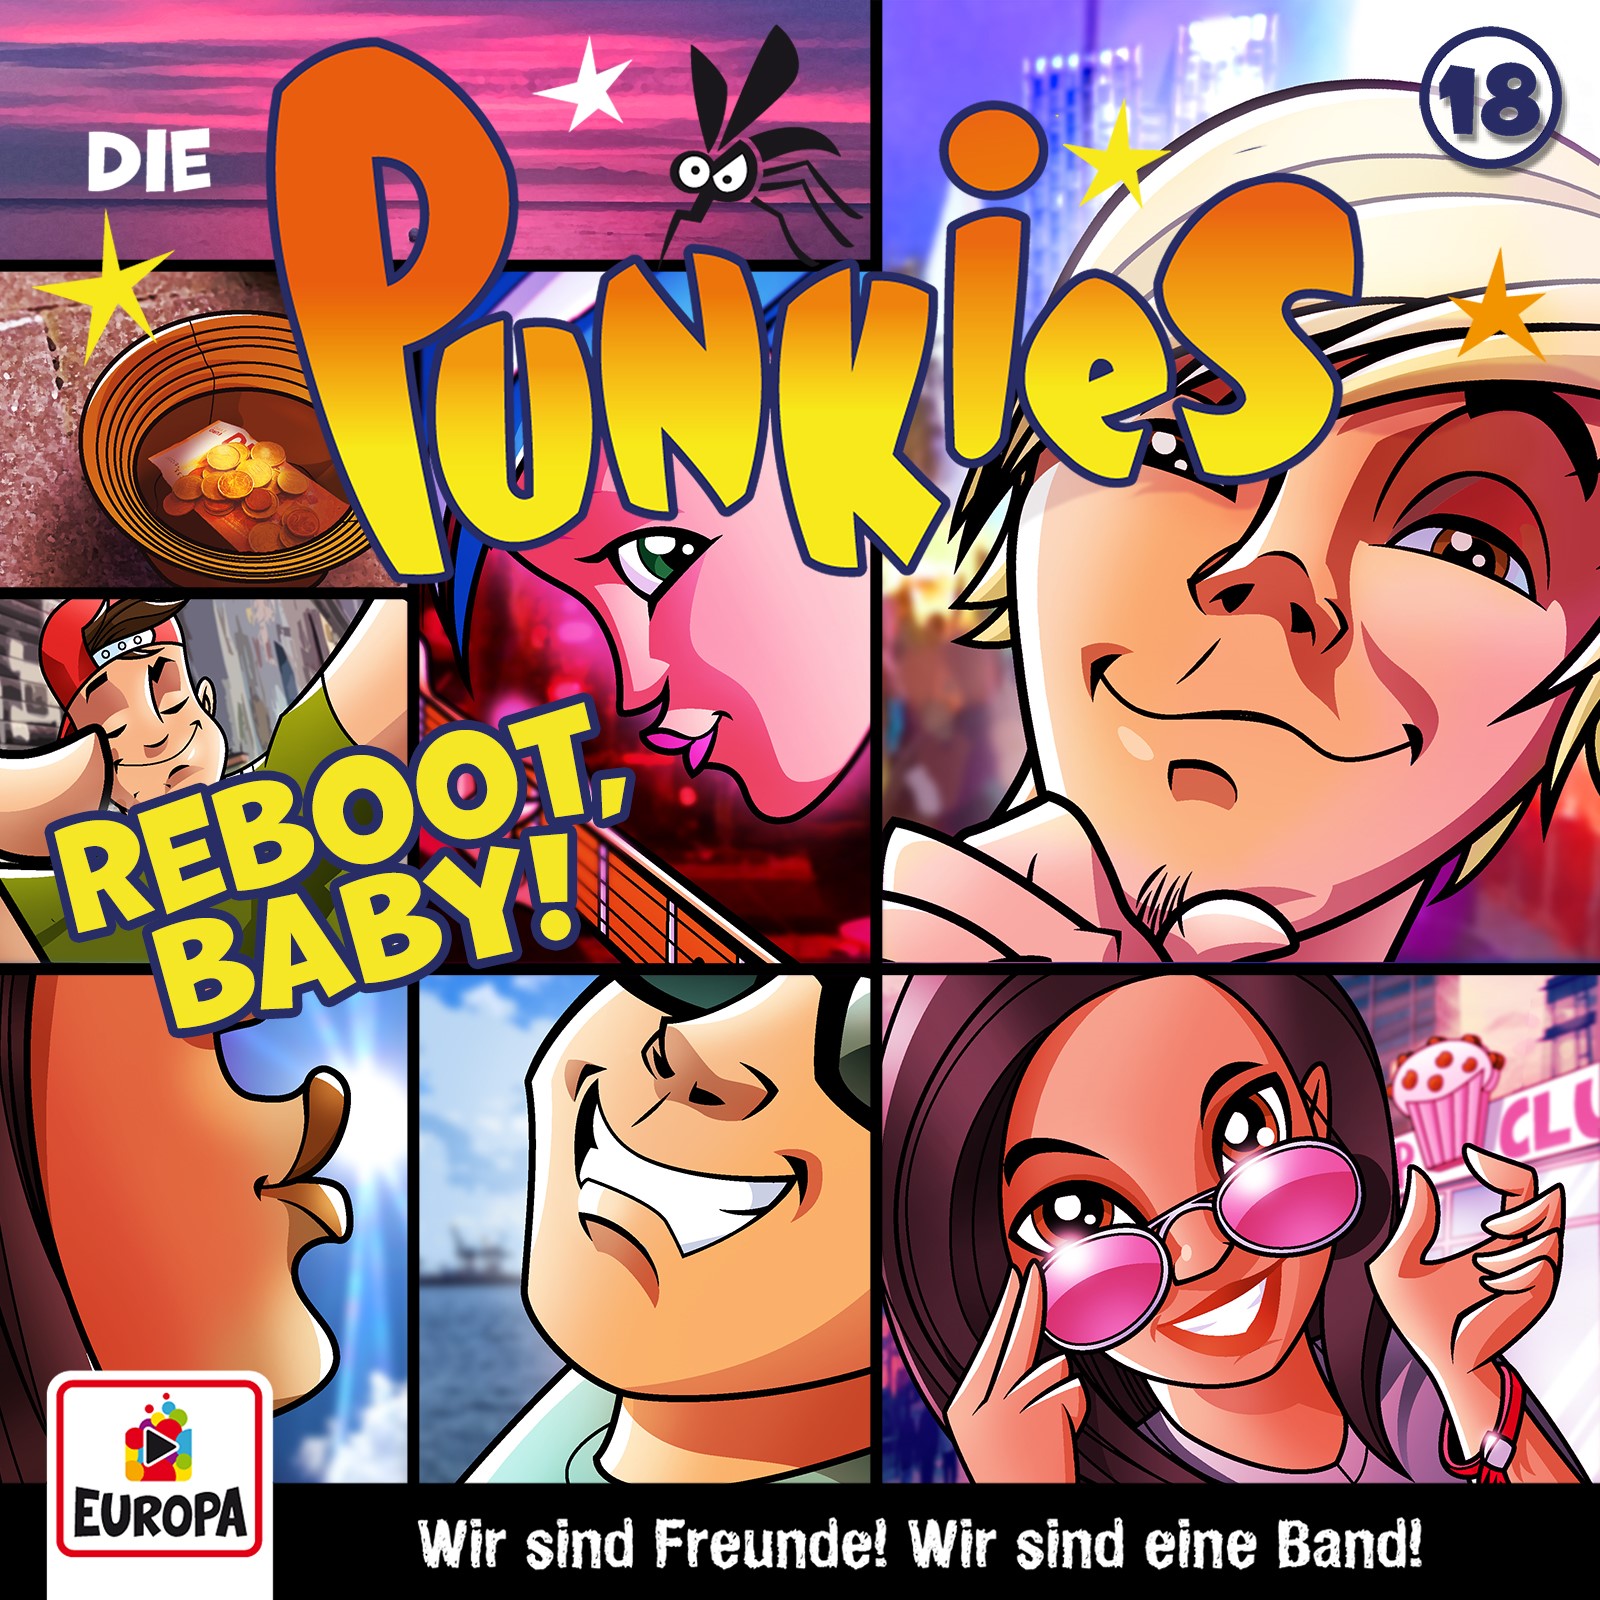 Die Punkies  - Reboot, Baby!